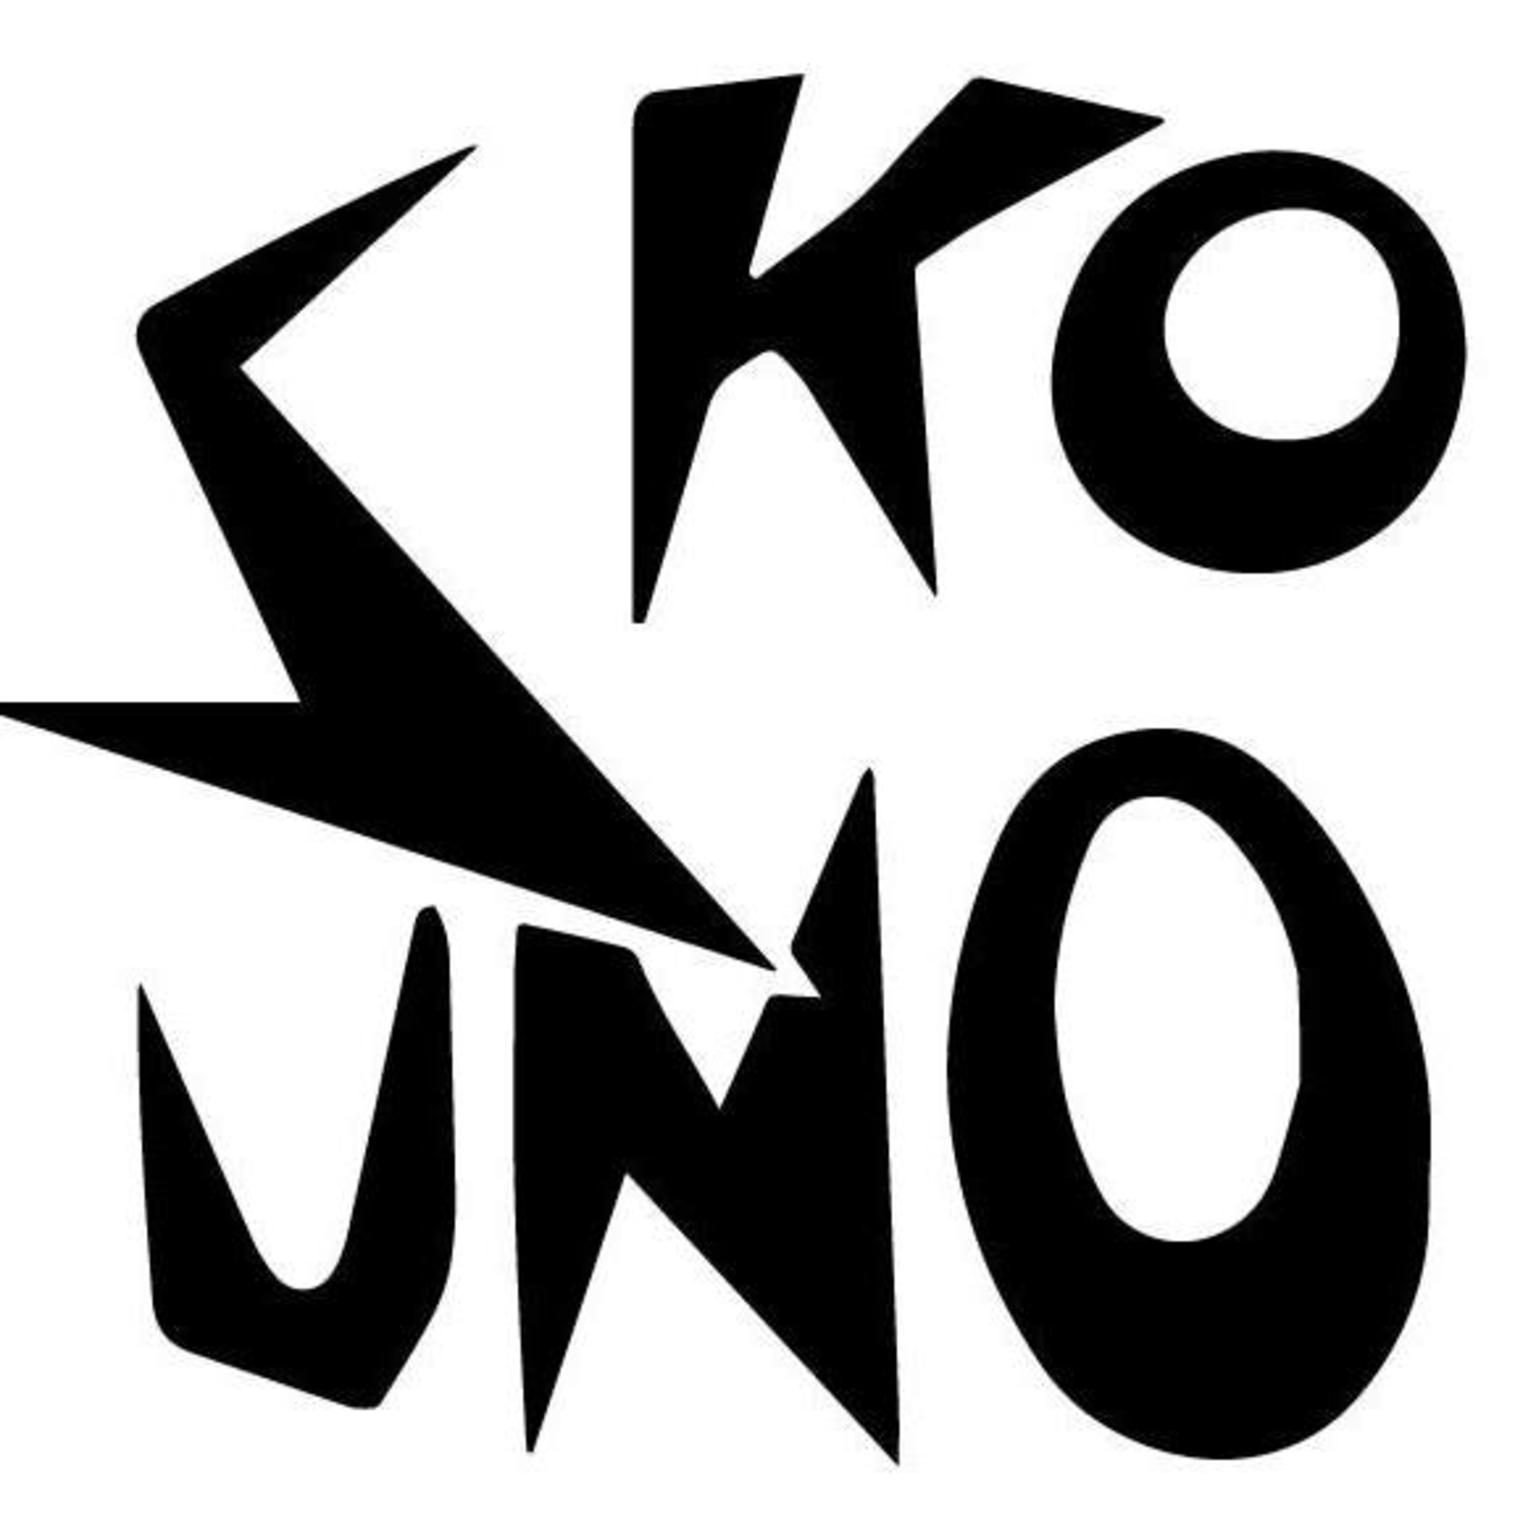 Sko-Uno